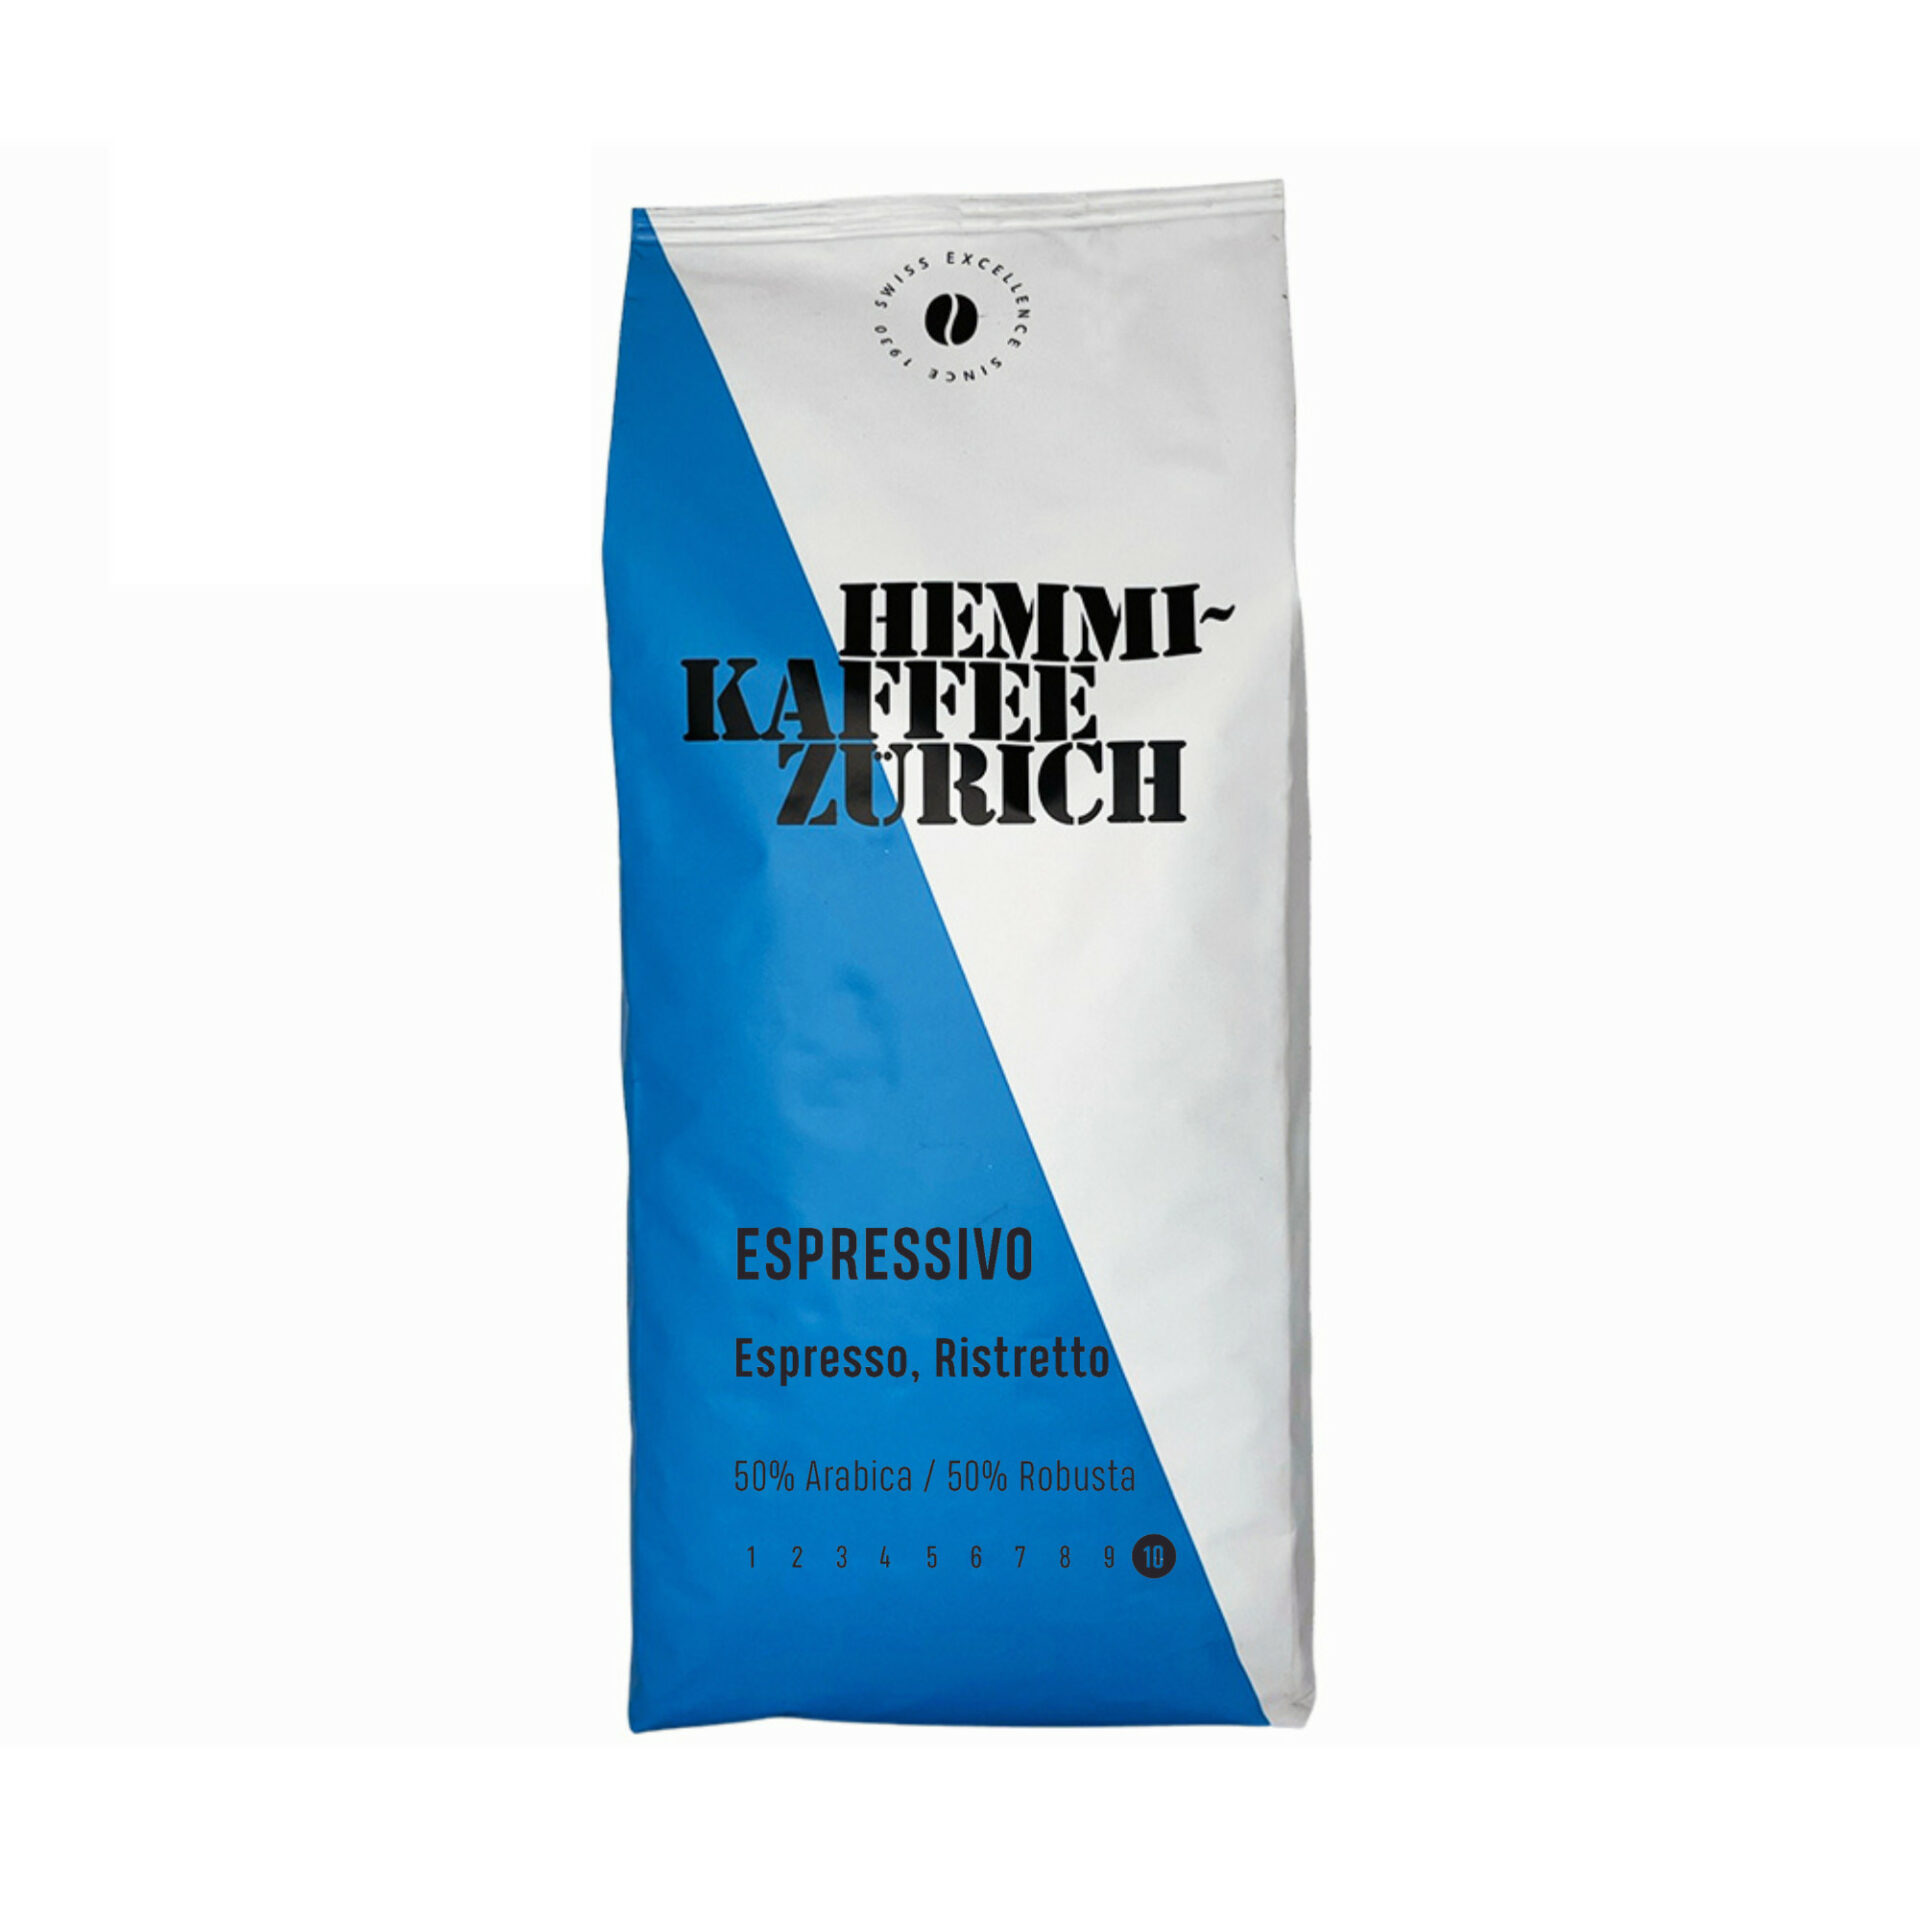 Hemmi Kaffee – Espressivo – Kaffeebohnen  Hemmi Kaffee, Lager Schlieren, Kaffeebohnen